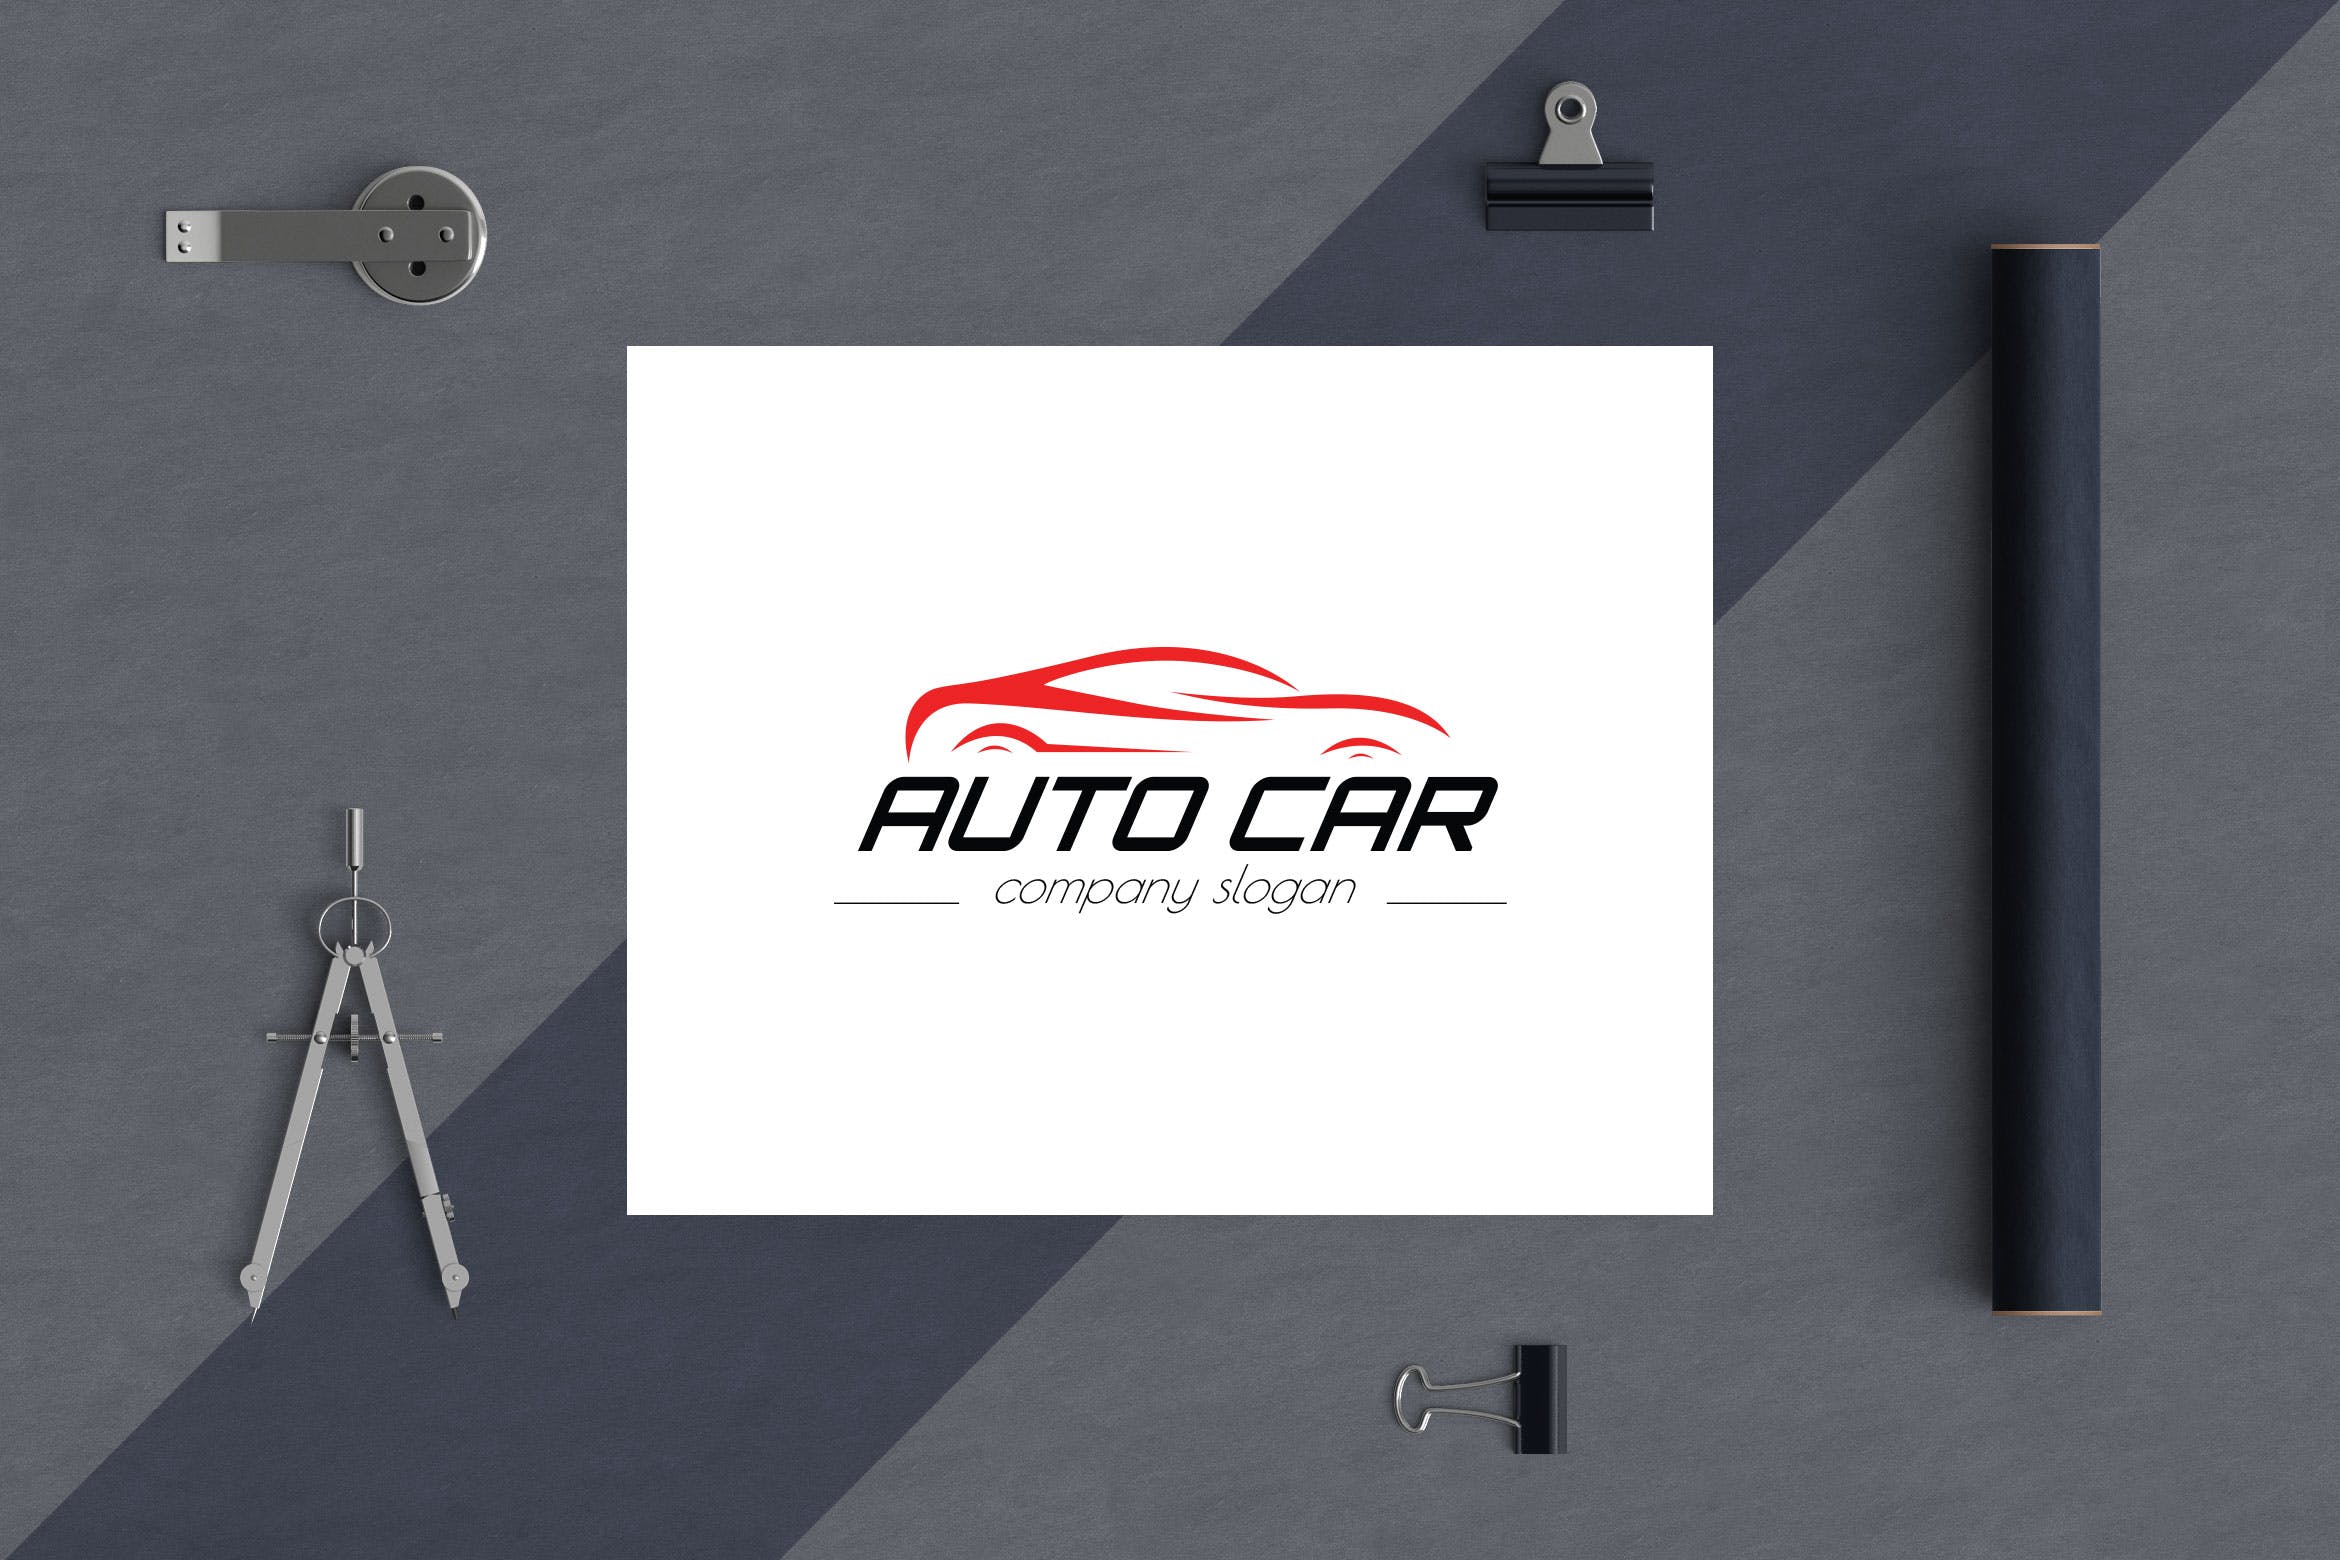 汽车相关企业品牌Logo设计16设计网精选模板 Auto Car Business Logo Template插图